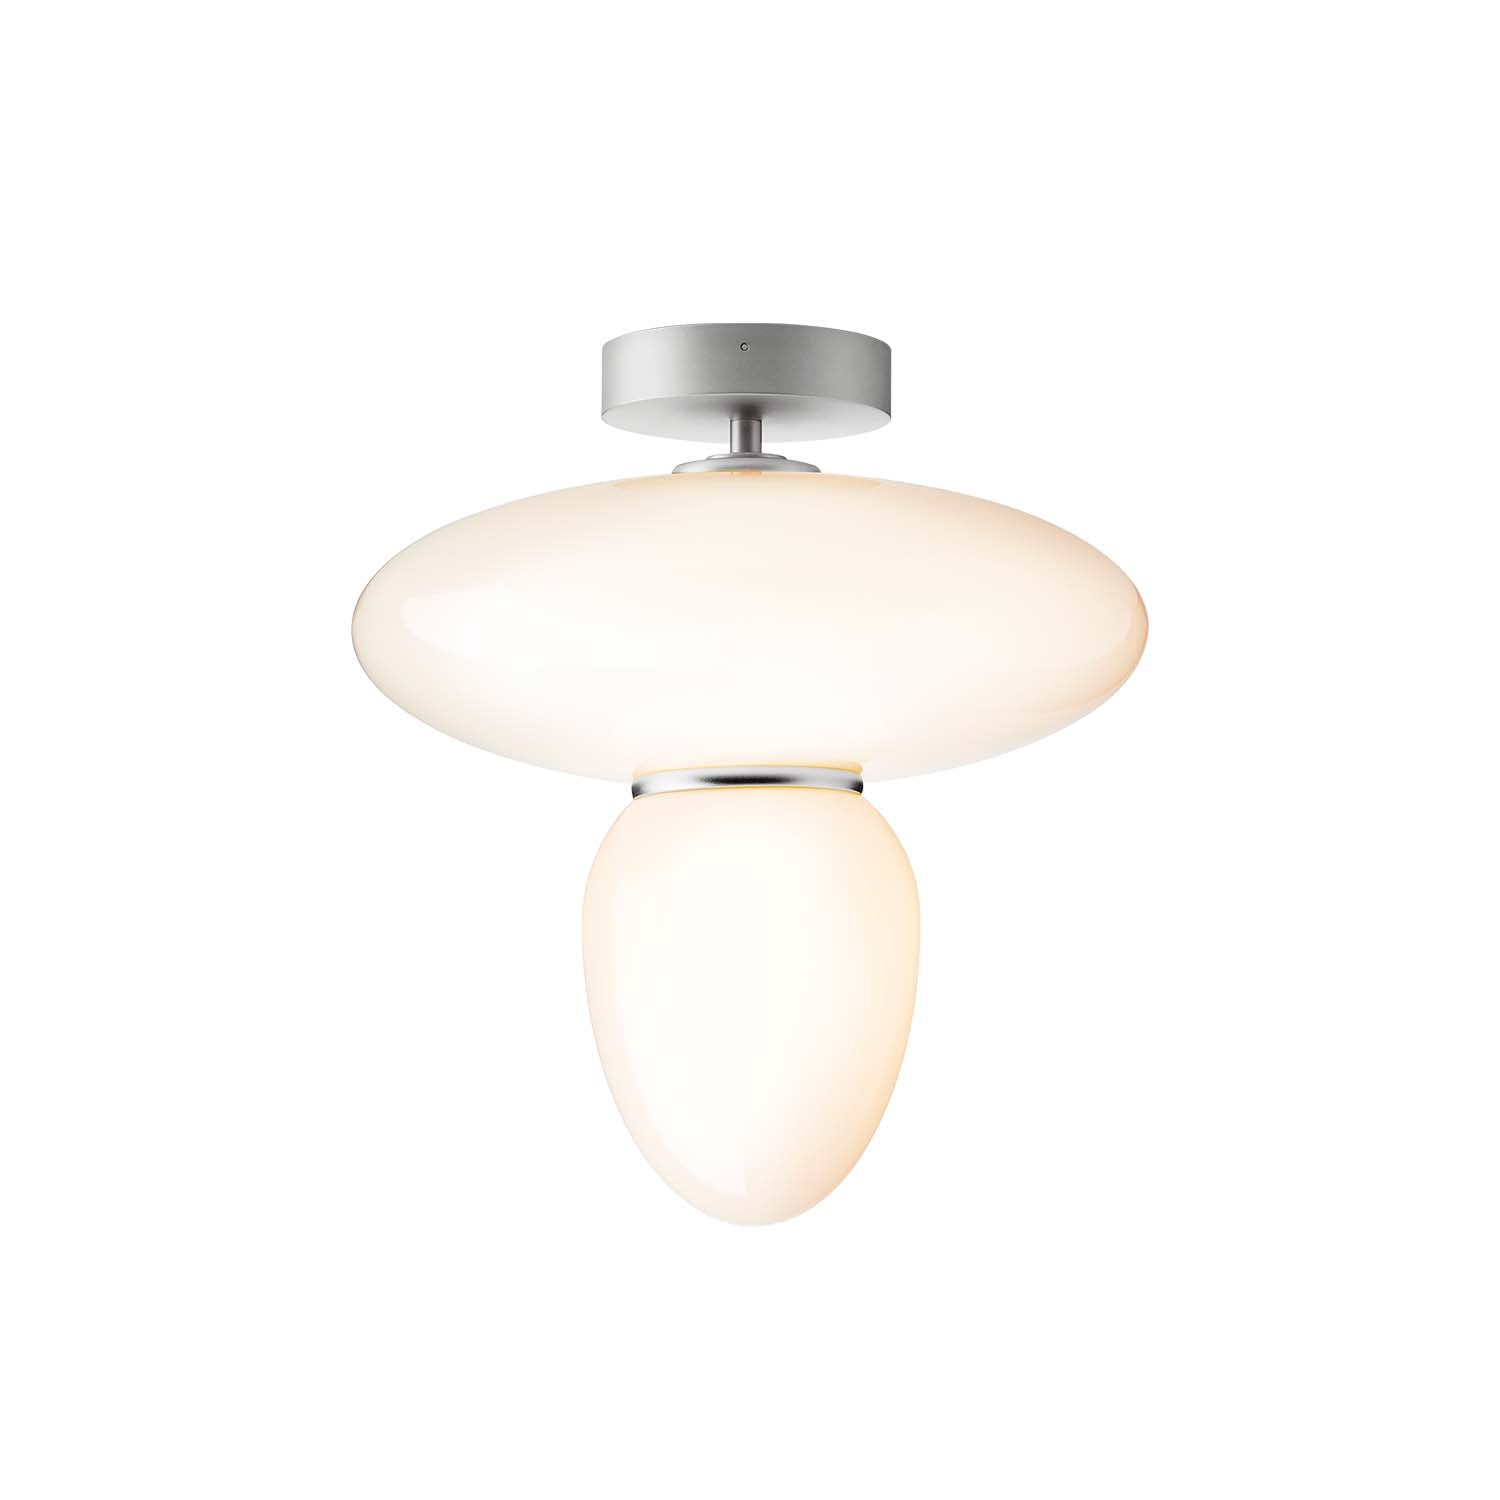 RIZZATTO 42 - Glass ceiling lamp, designer creation, art deco